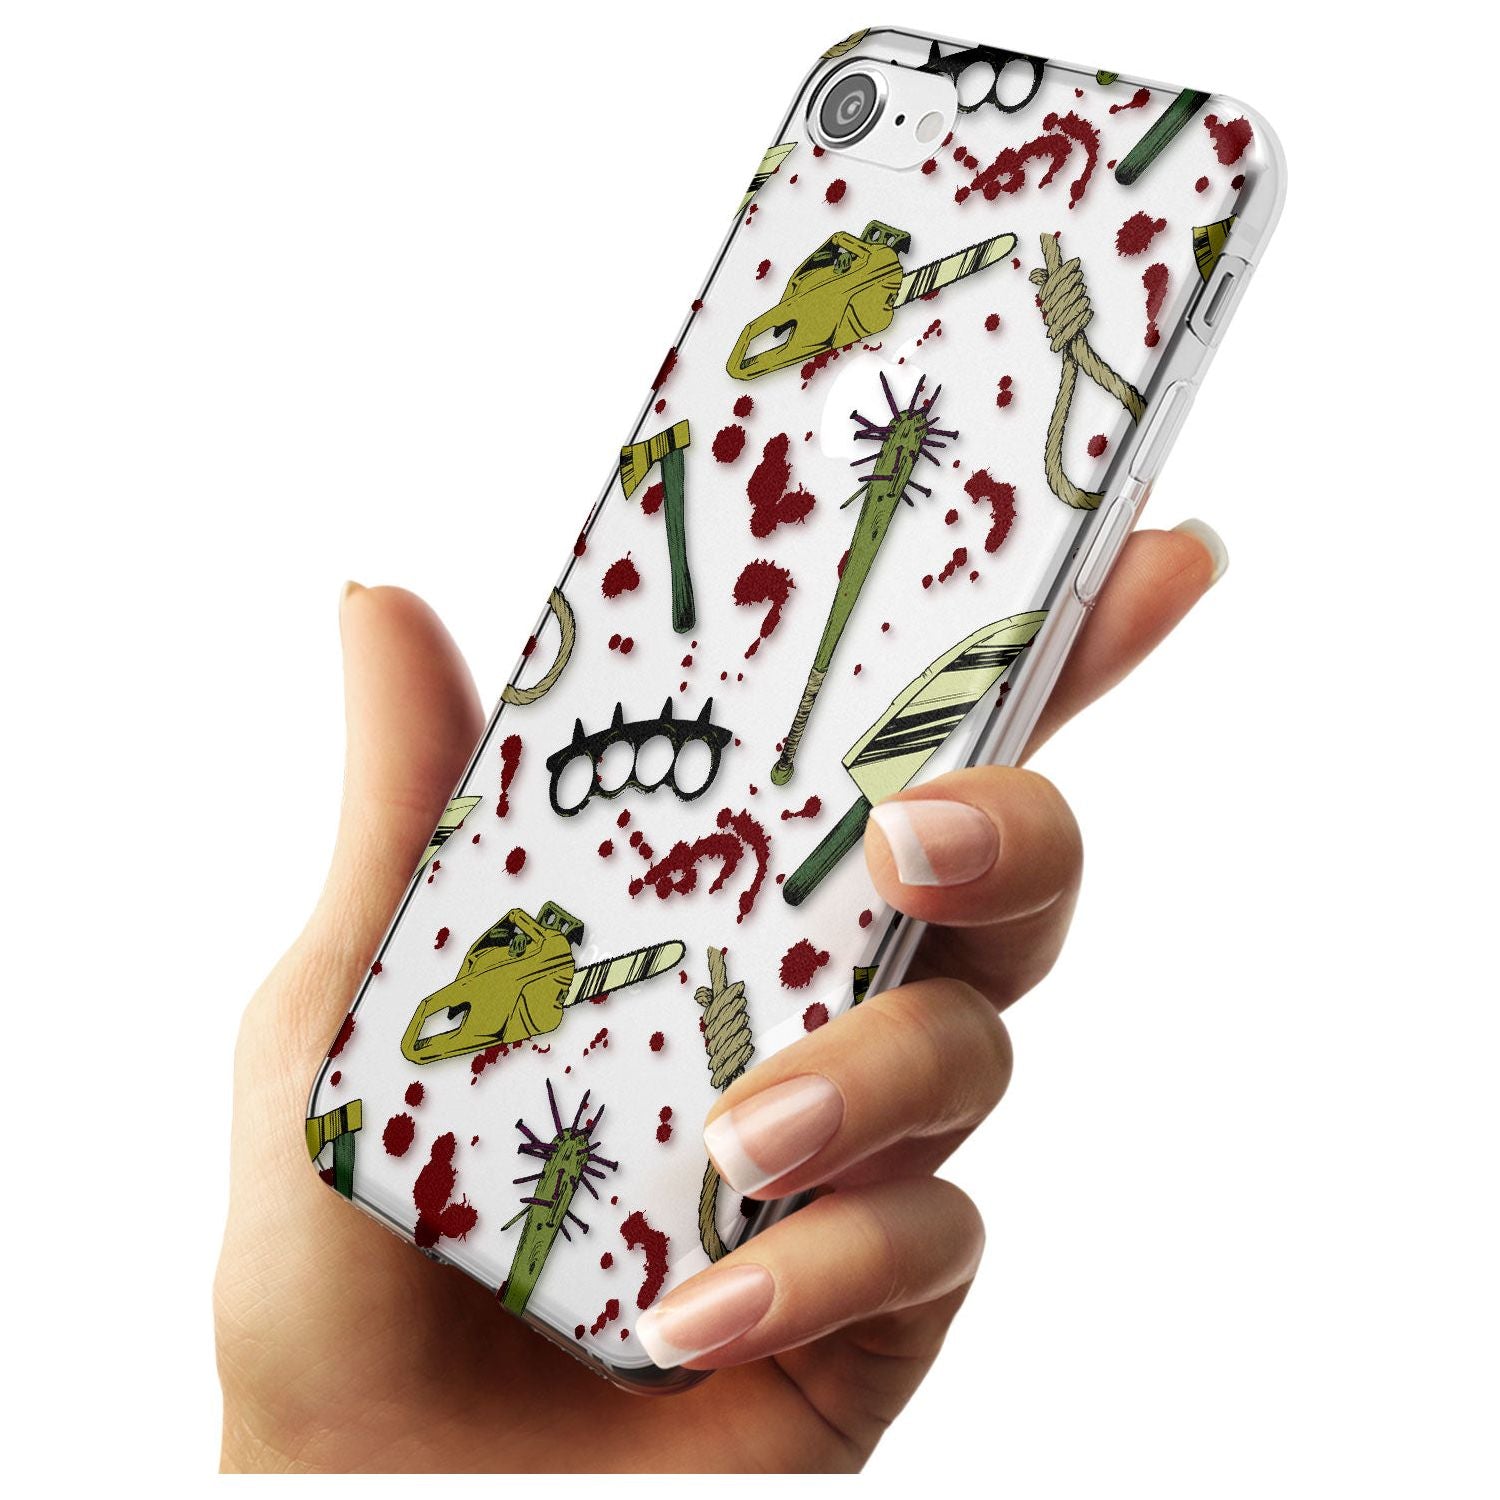 Movie Massacre Slim TPU Phone Case for iPhone SE 8 7 Plus